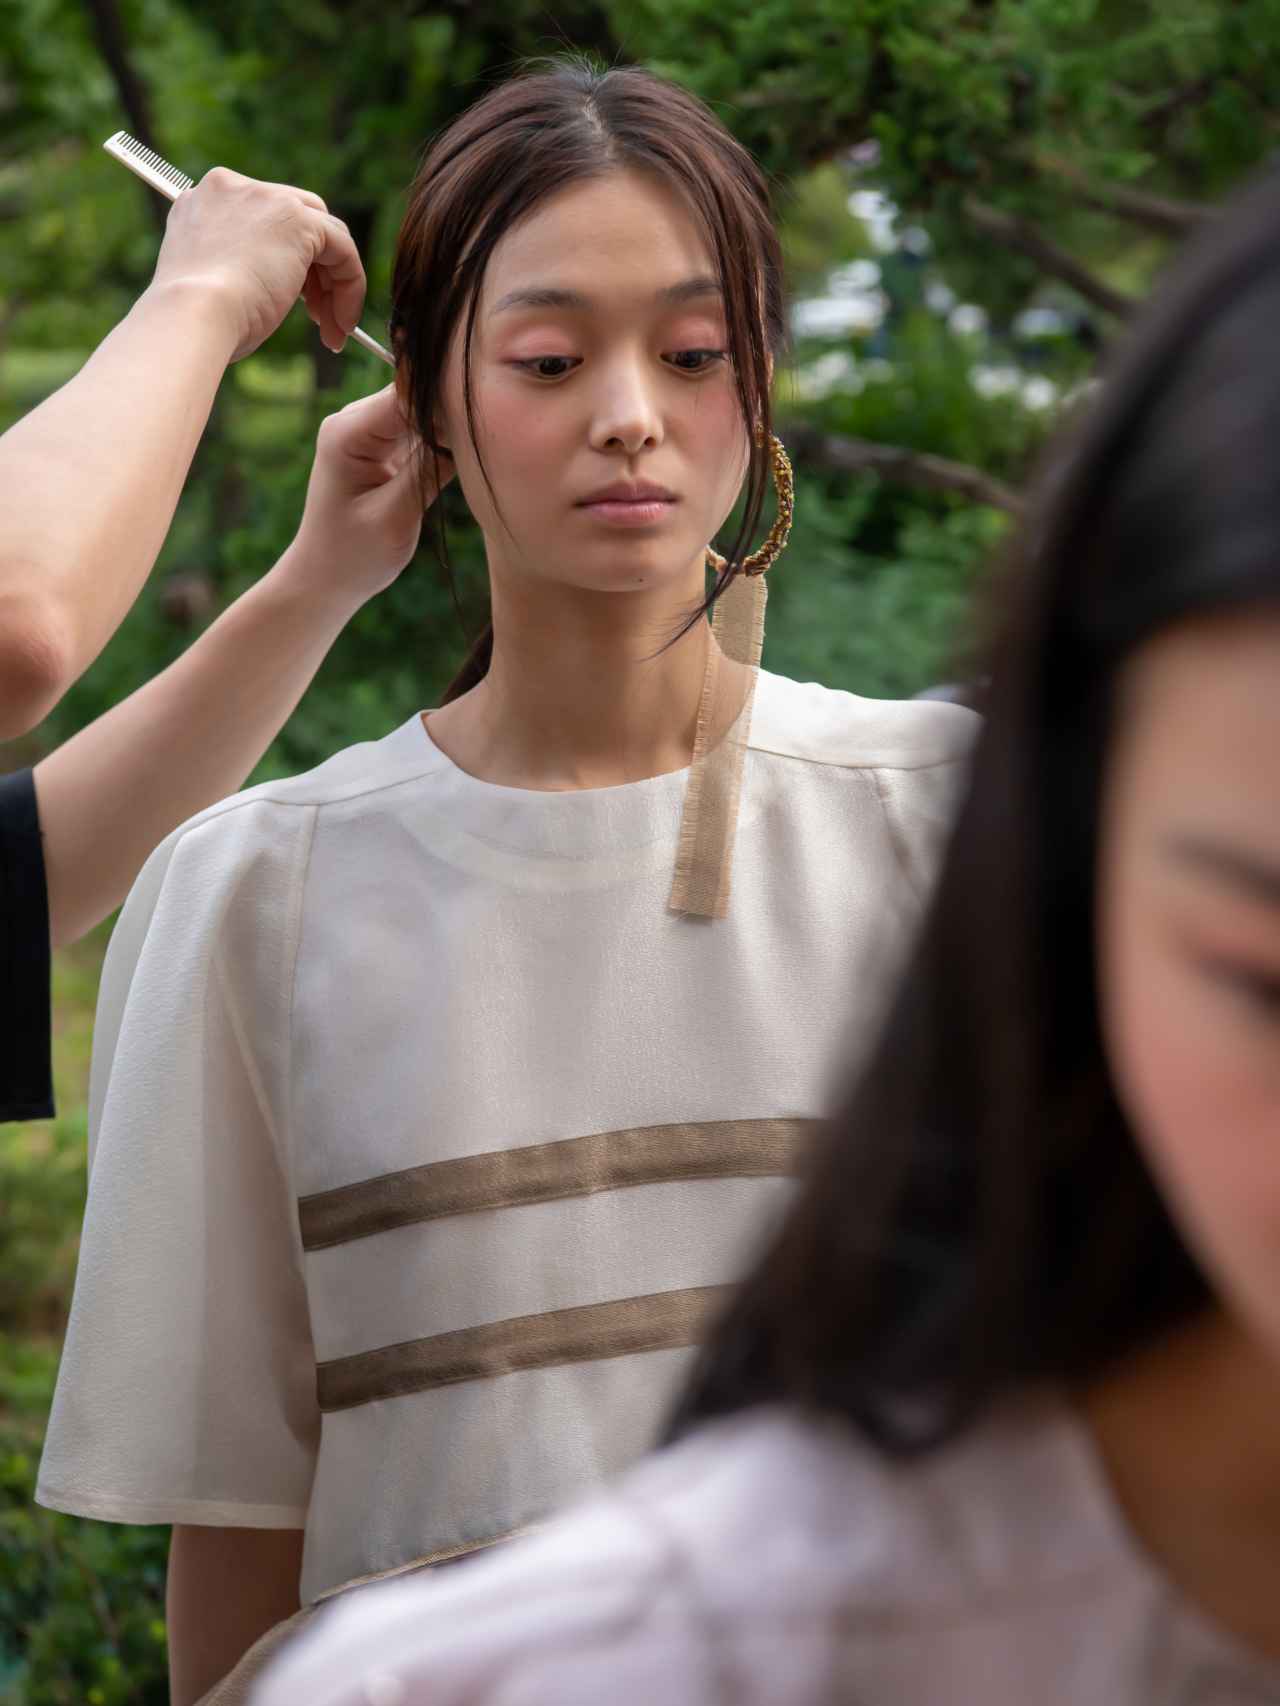 Preparan a una de las modelos de Cahiers durante la Fashion Week de Seúl.